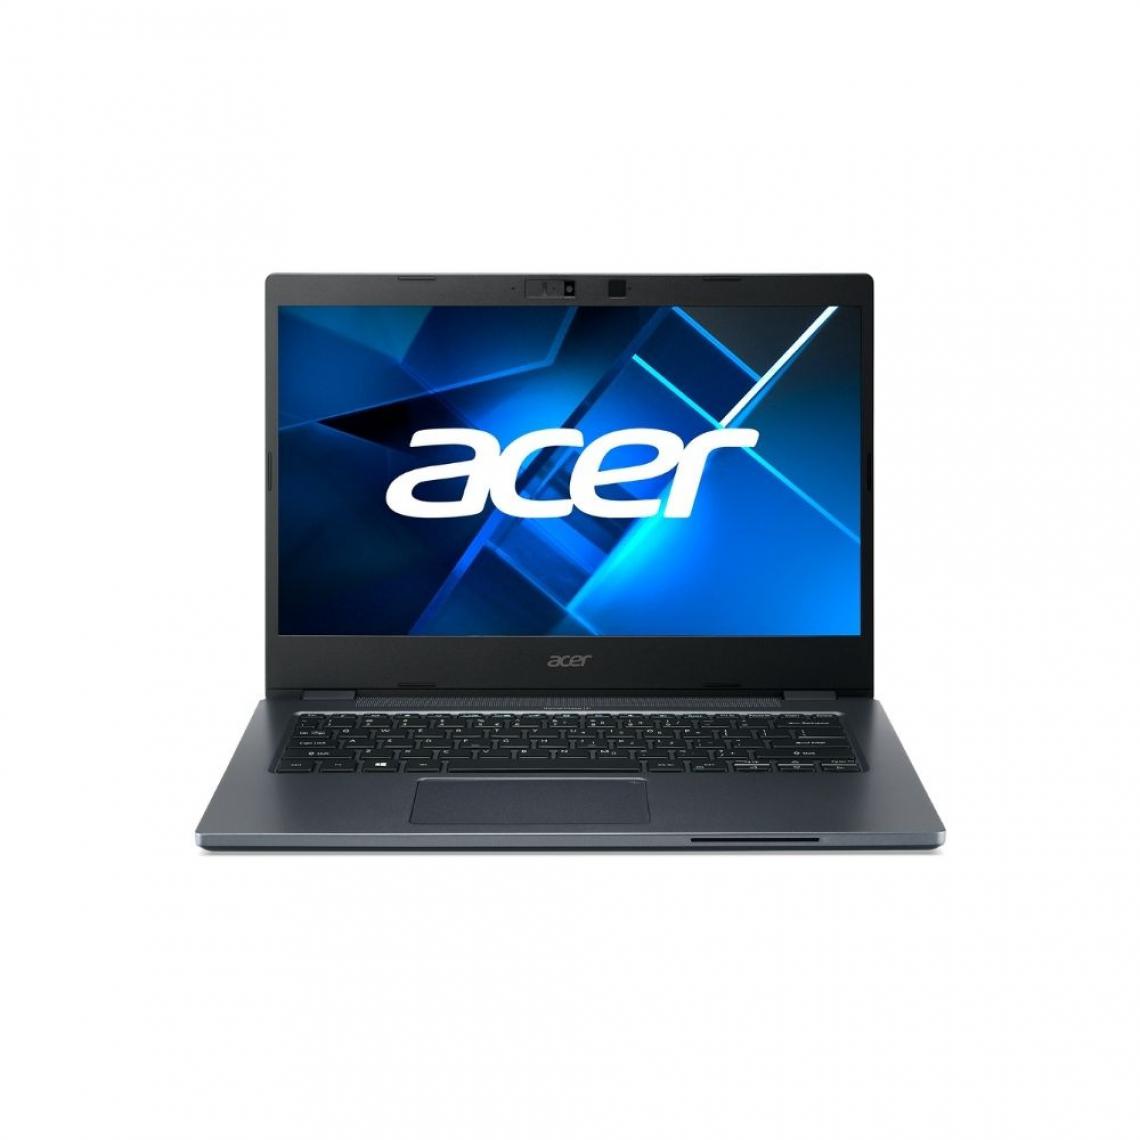 Acer - Portable ACER Travel Mate TMP414-51-552j Intel Core i5-1135G7 8Go 512GoSSD Graphique intégrée 14.0"FHD IPS Mate Win10 Pro DAS - PC Portable